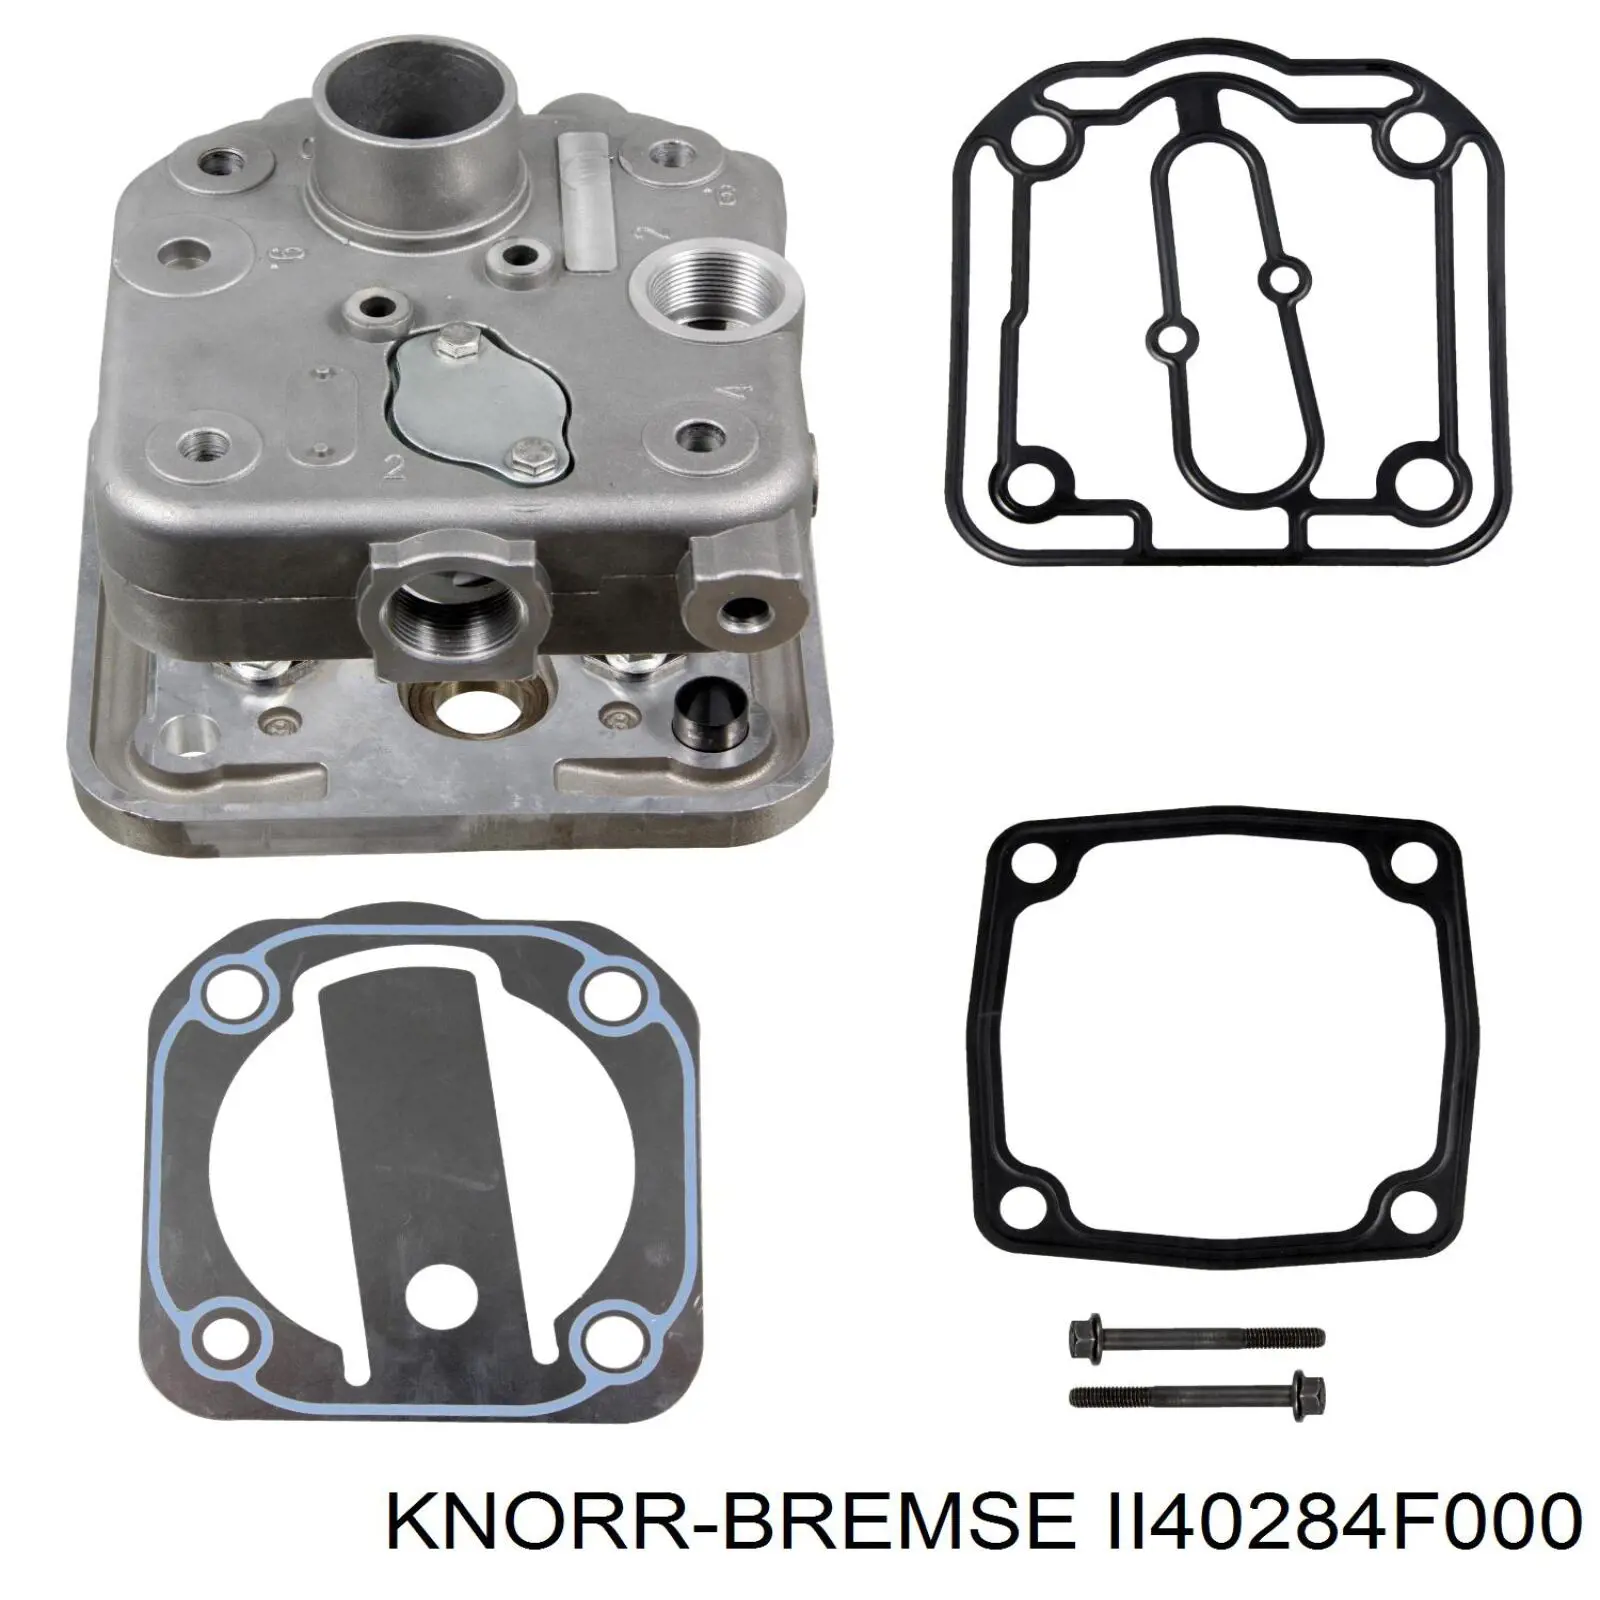 II40284F000 Knorr-bremse cabezal de el compresor (camion)